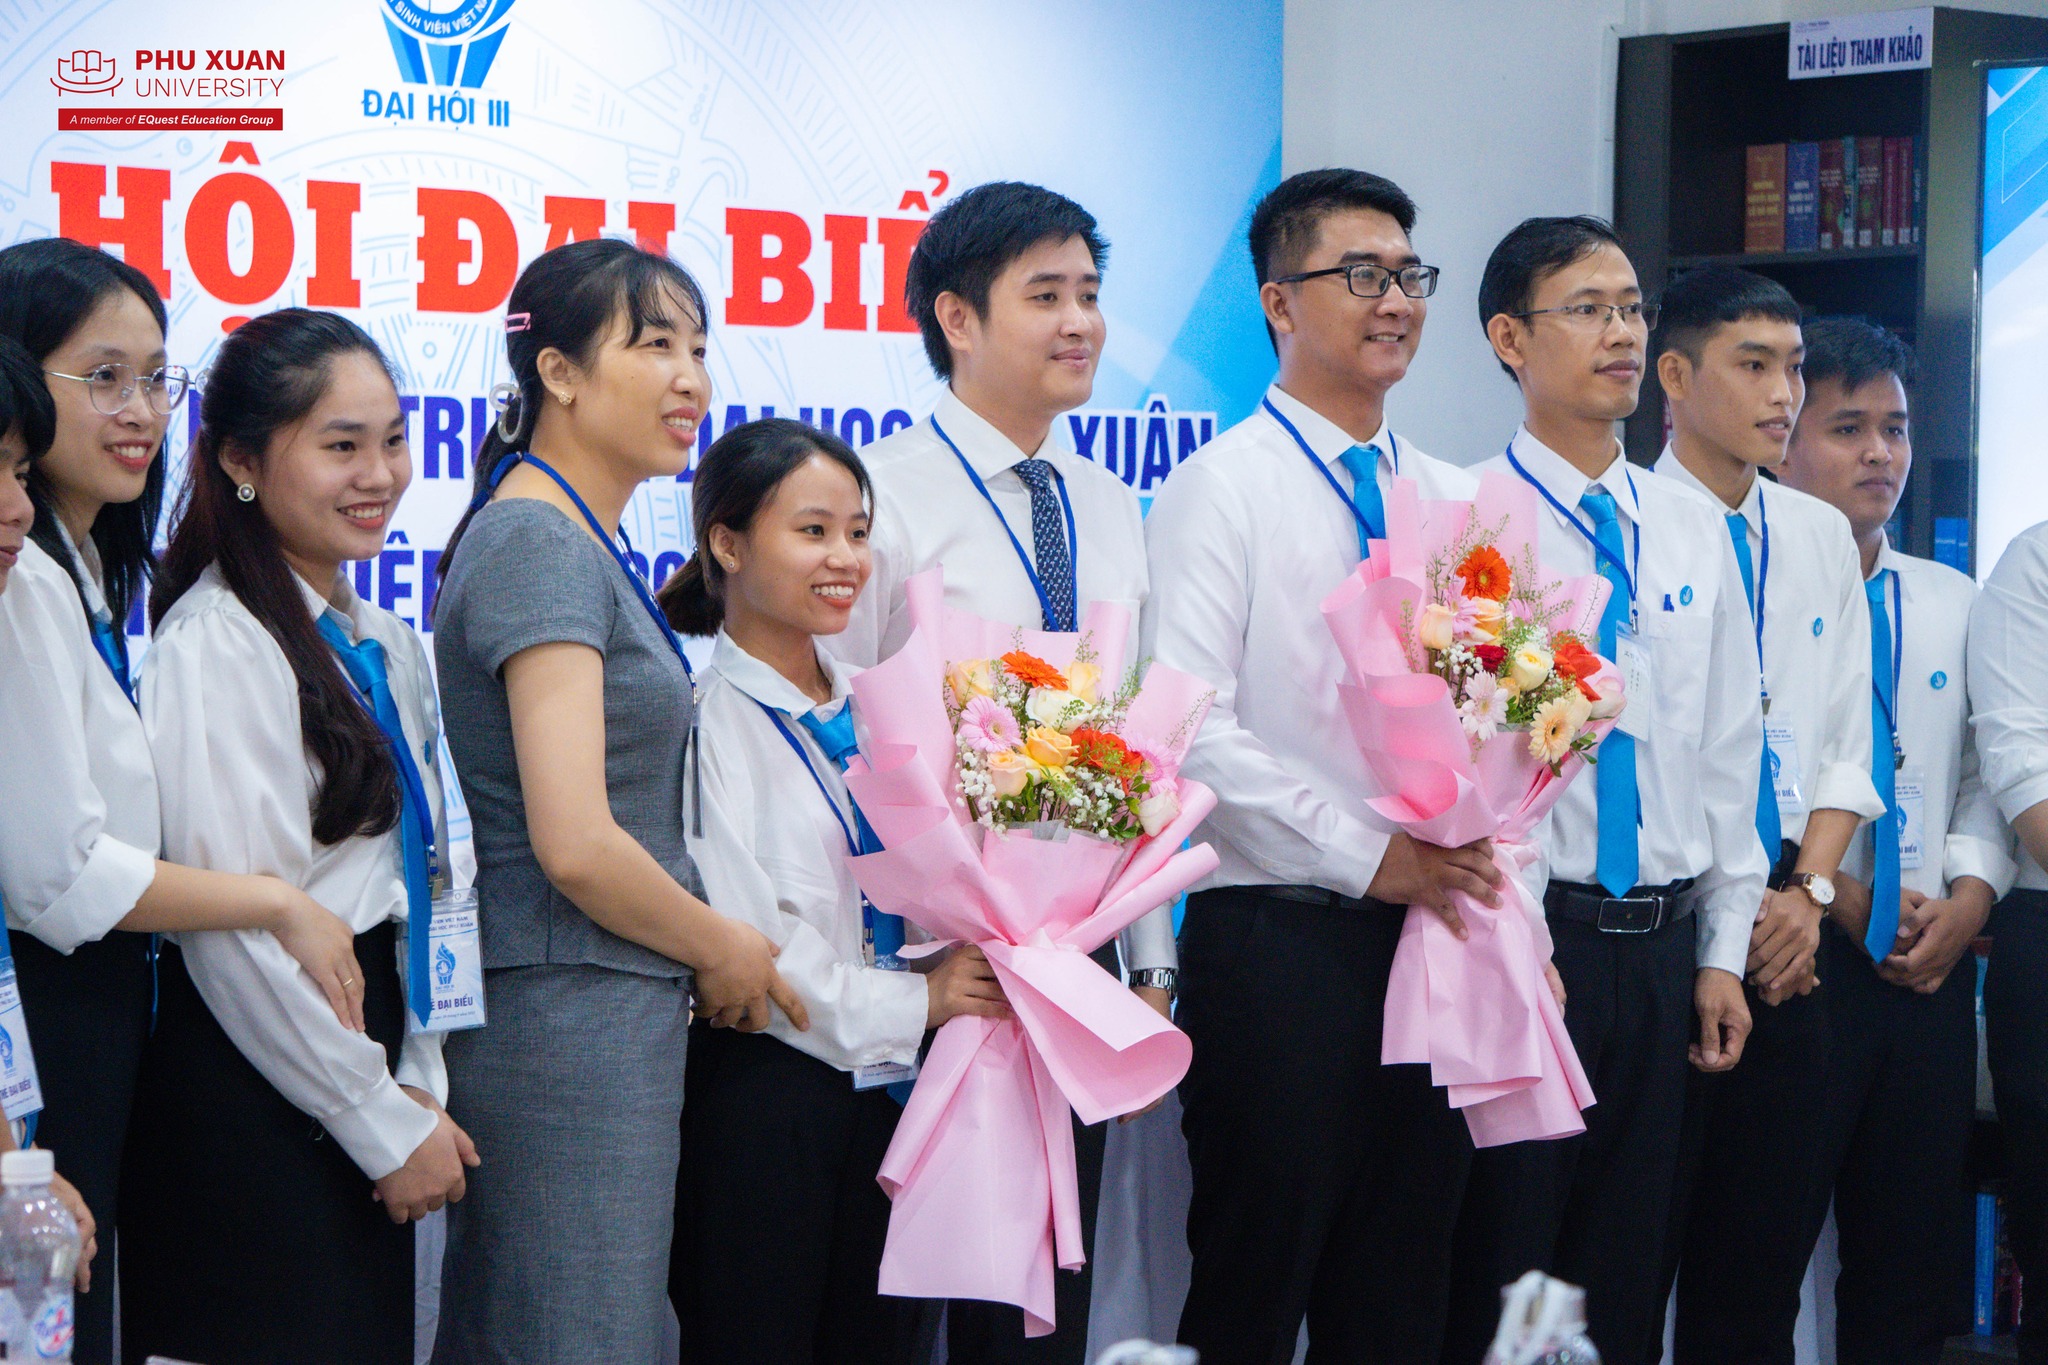 Đại hội Hội Sinh viên trường Đại học Phú Xuân lần thứ III thành công tốt đẹp